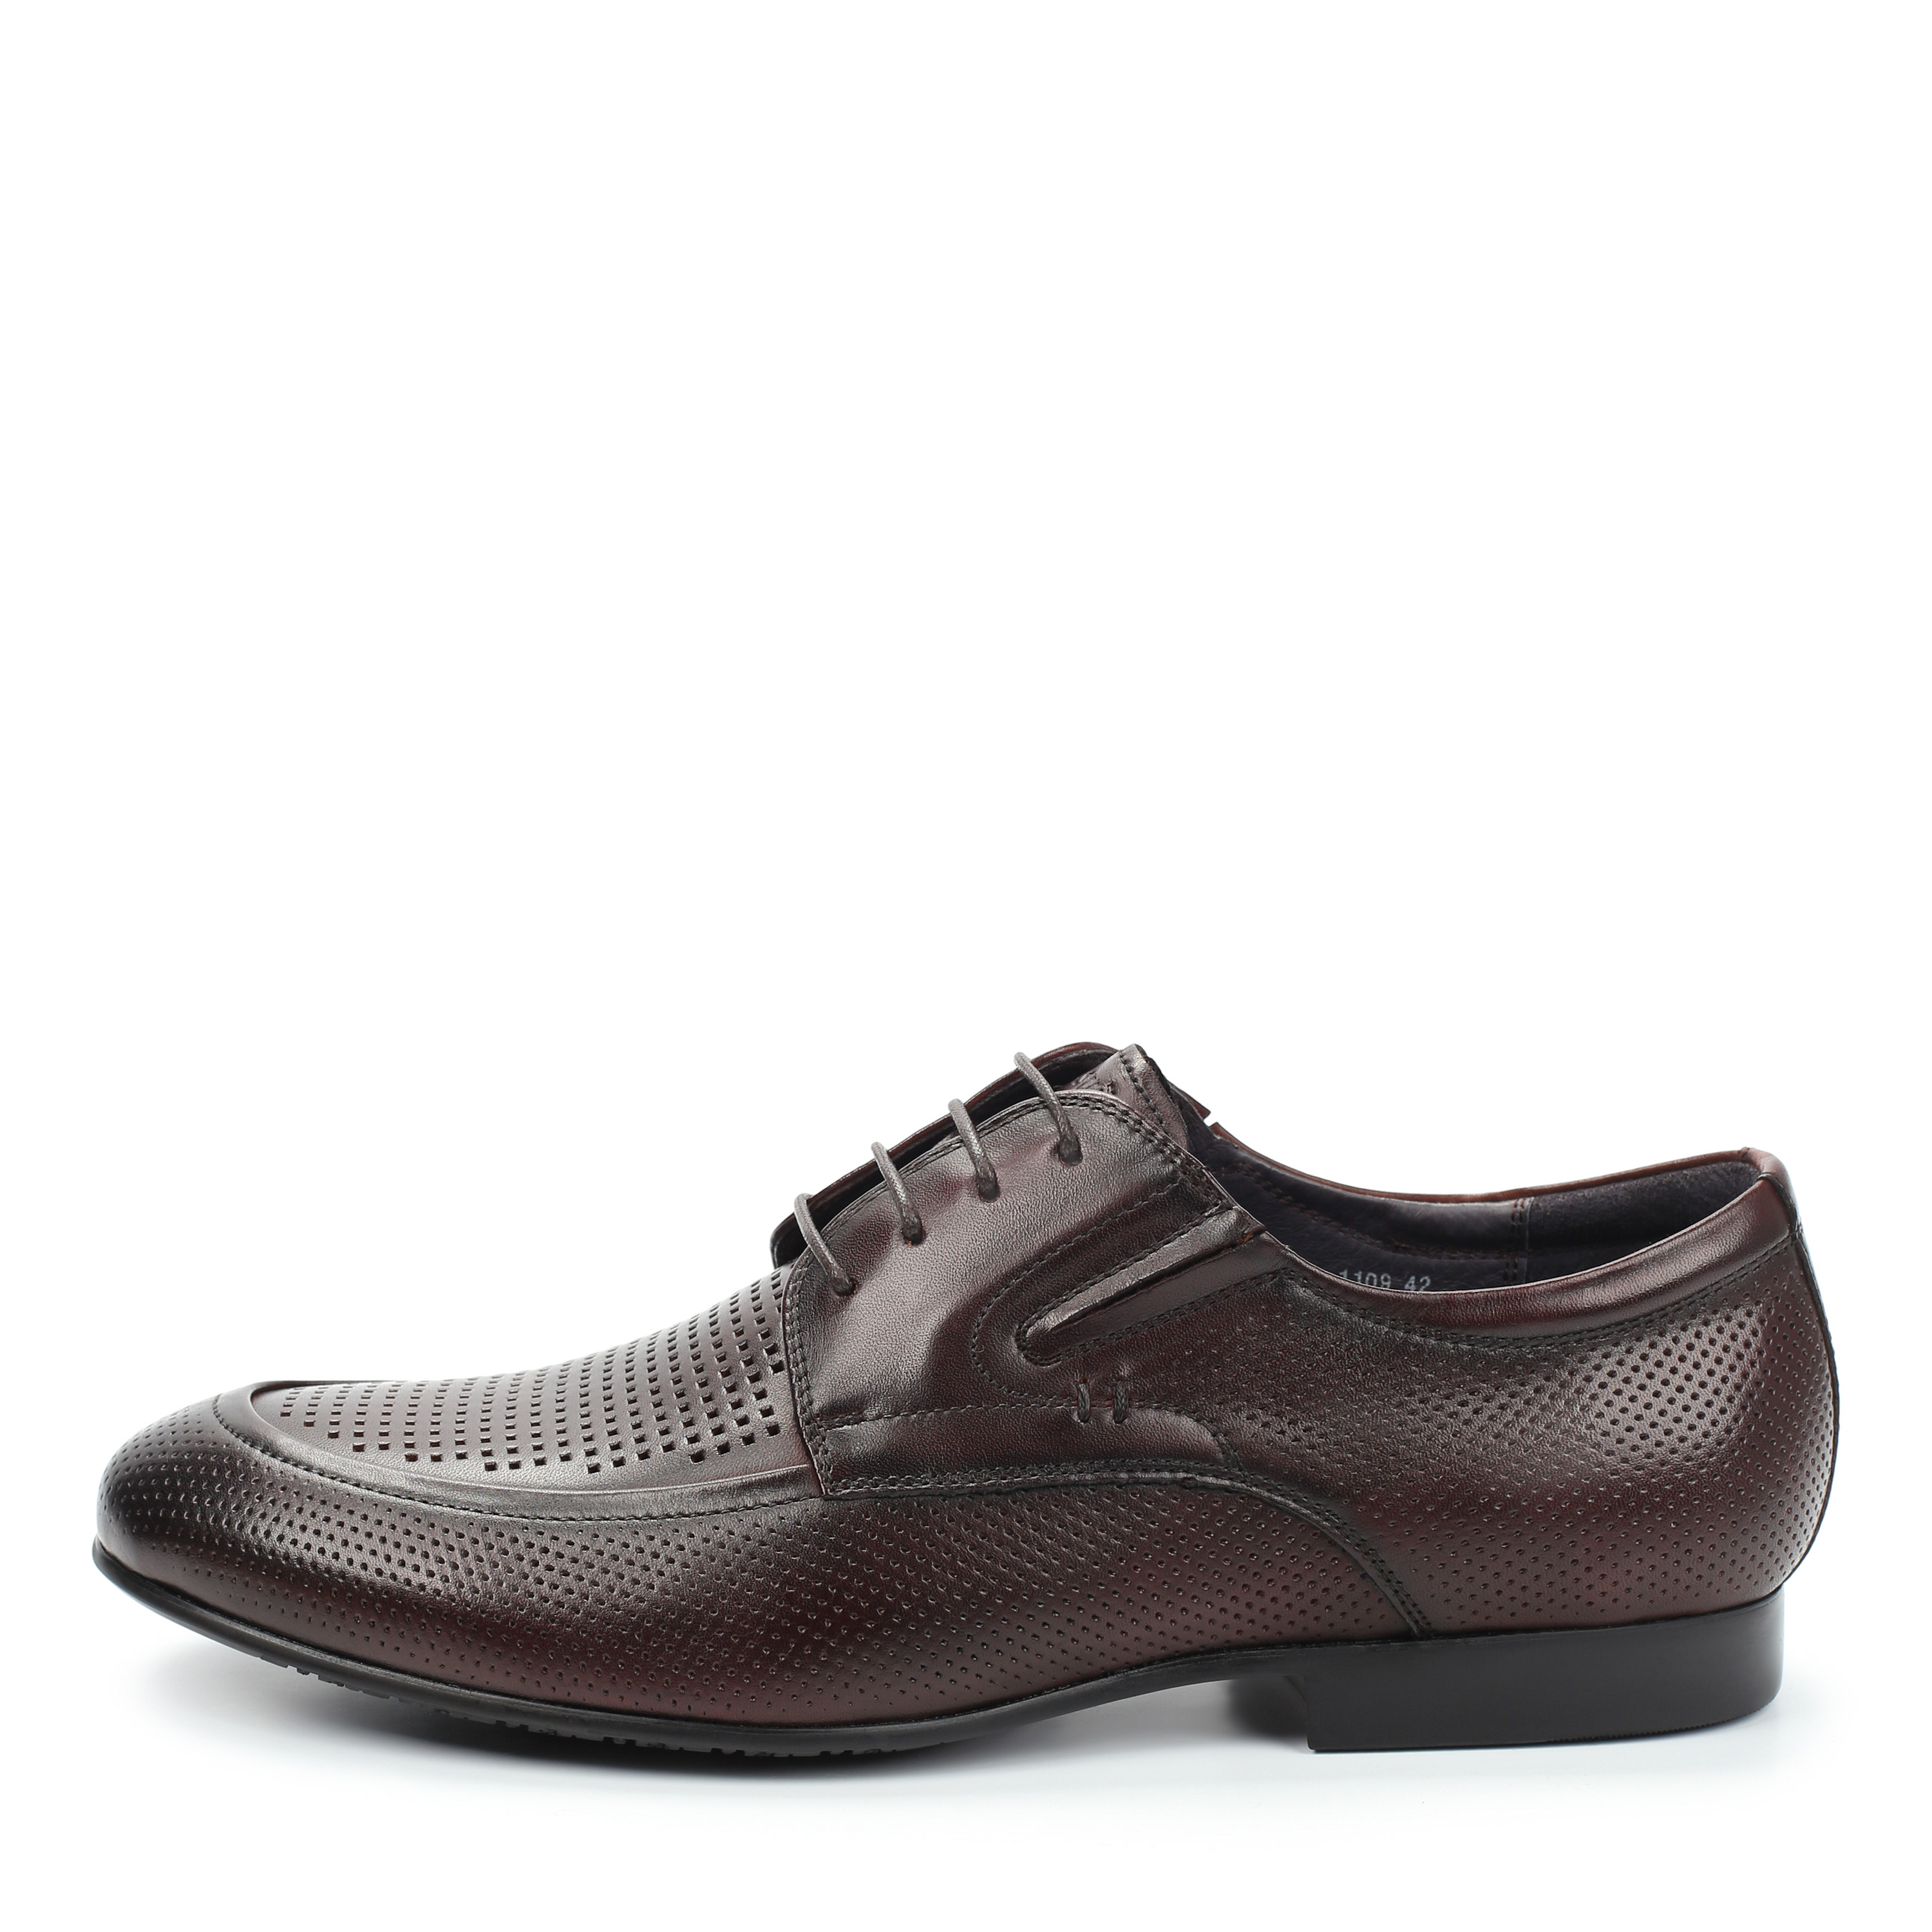 Туфли Thomas Munz 058-115B-1109 058-115B-1109, цвет коричневый, размер 41 полуботинки - фото 1